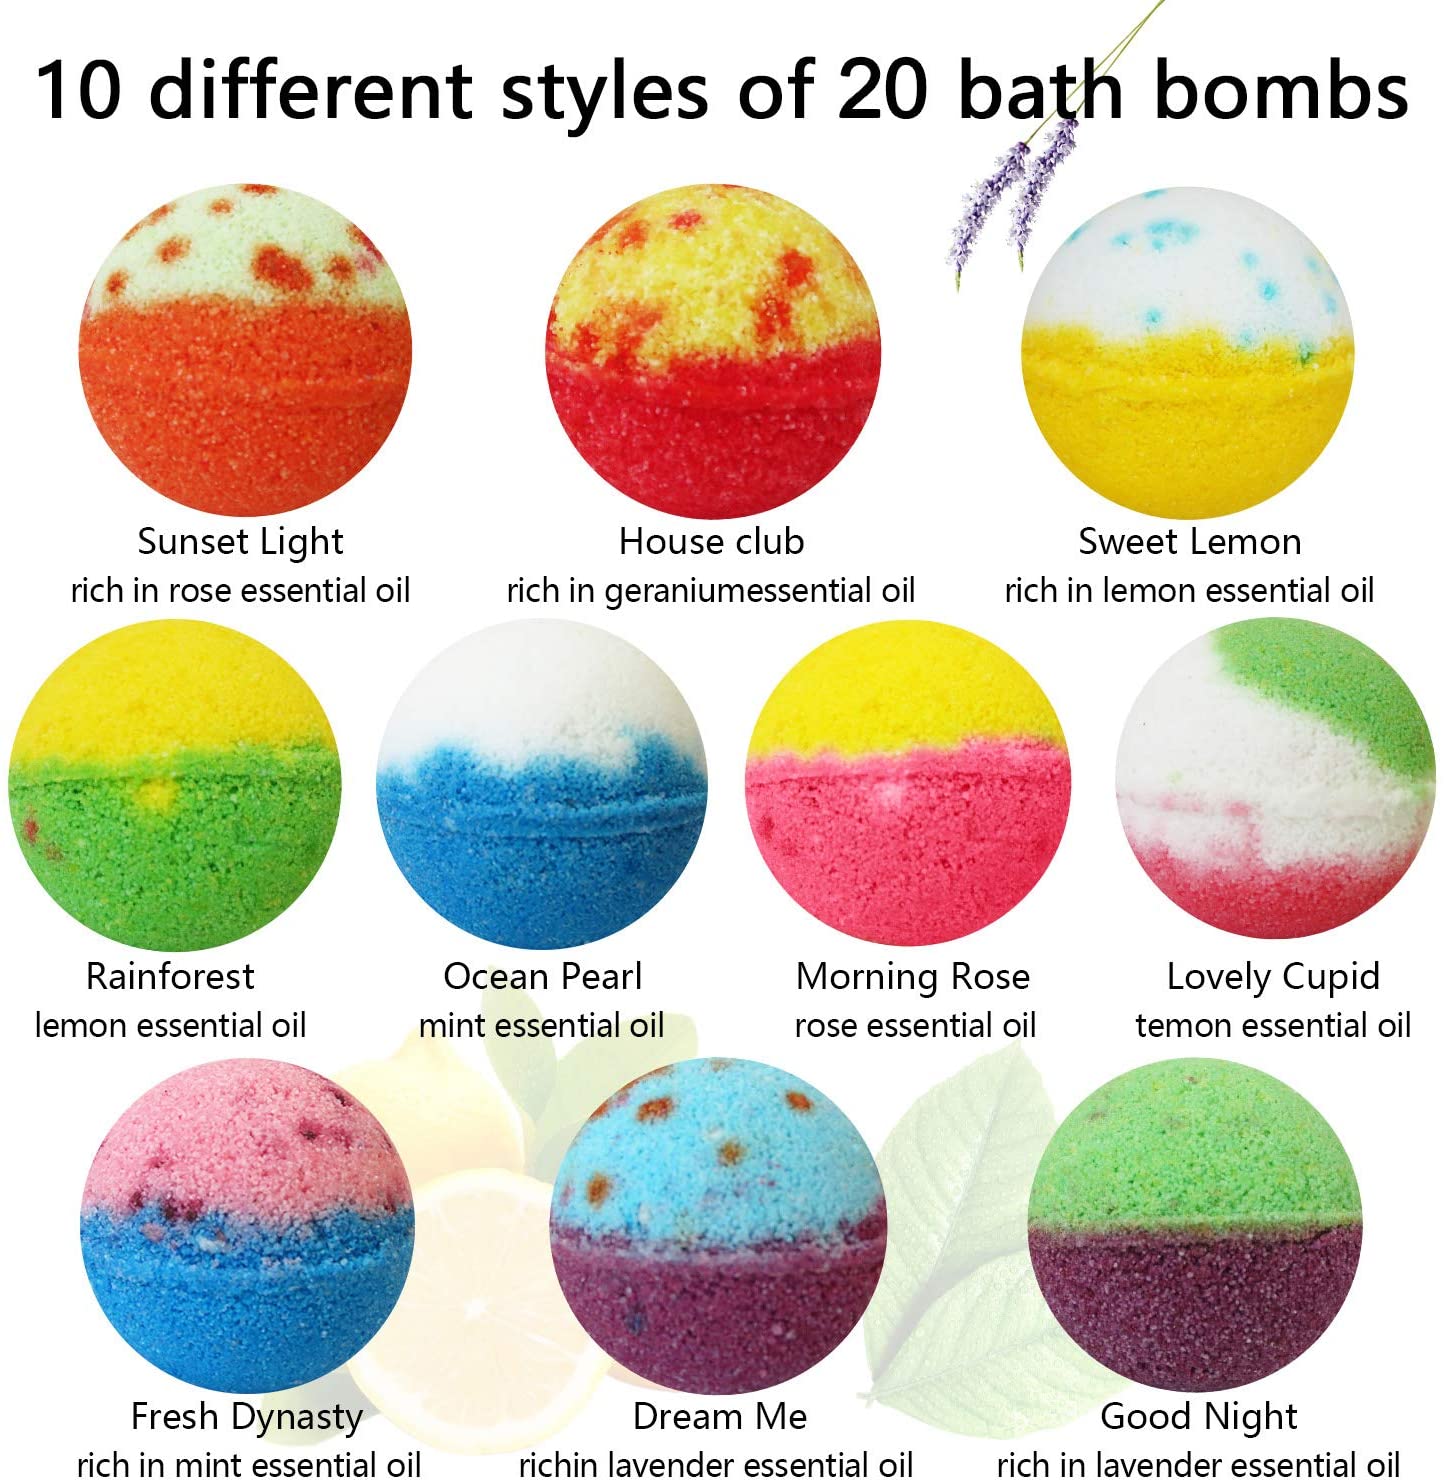  Bath Bombs